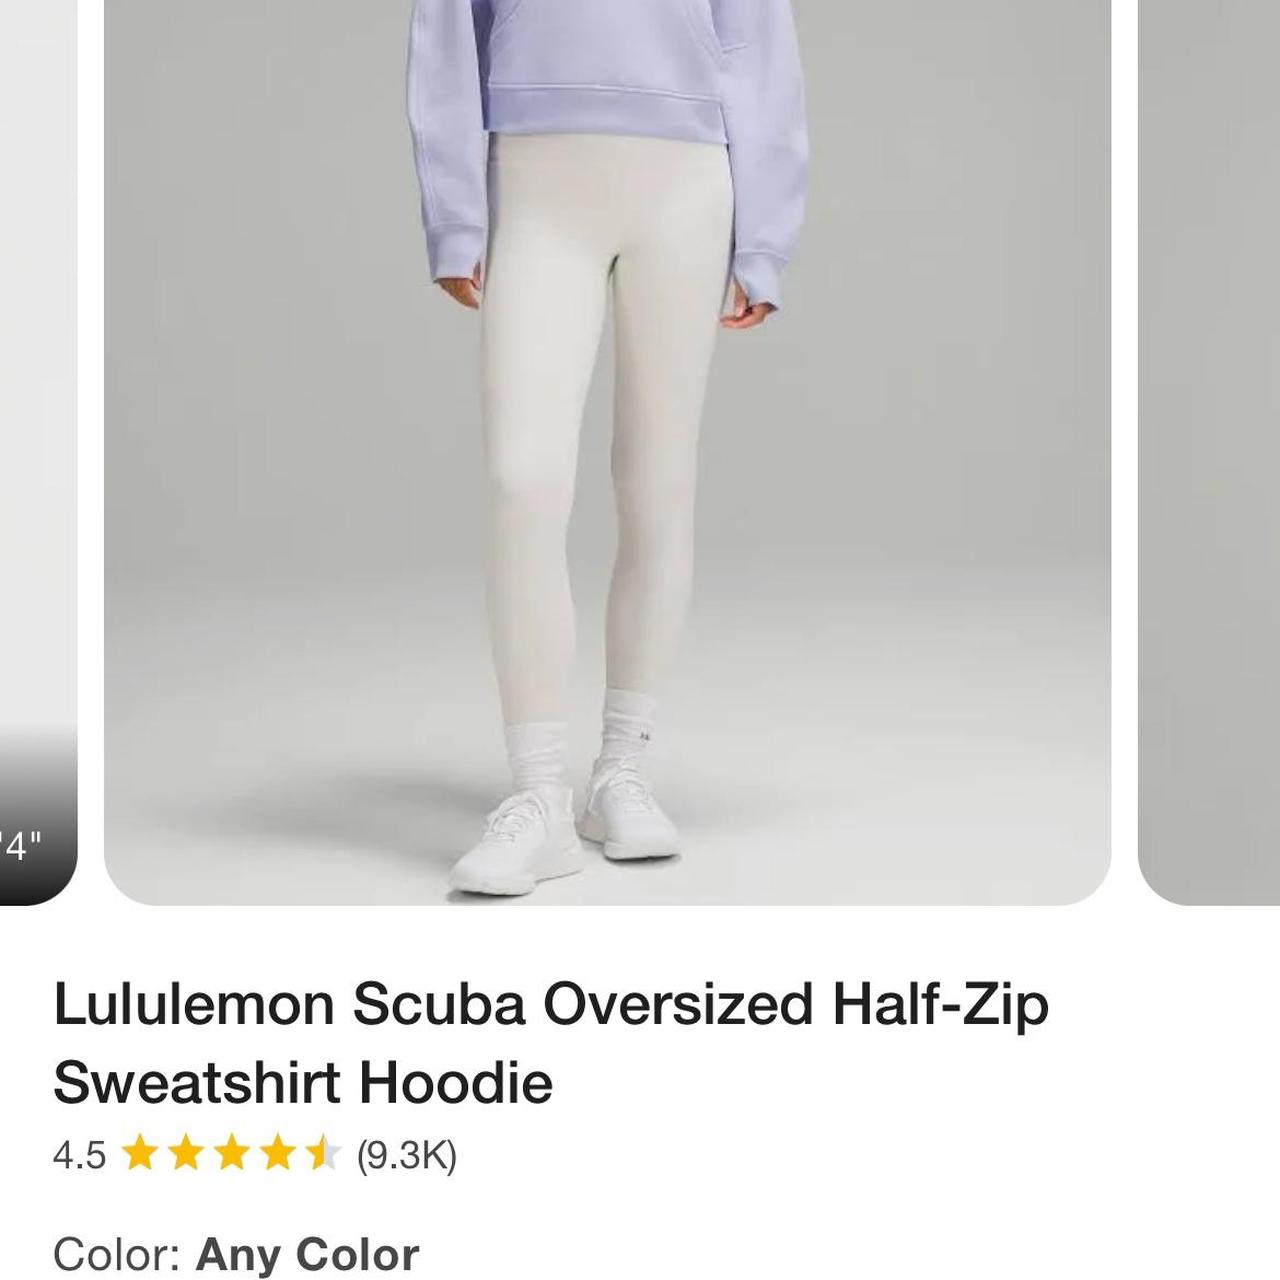 Lulu scuba hoodie dupe #lululemon #activewear - Depop